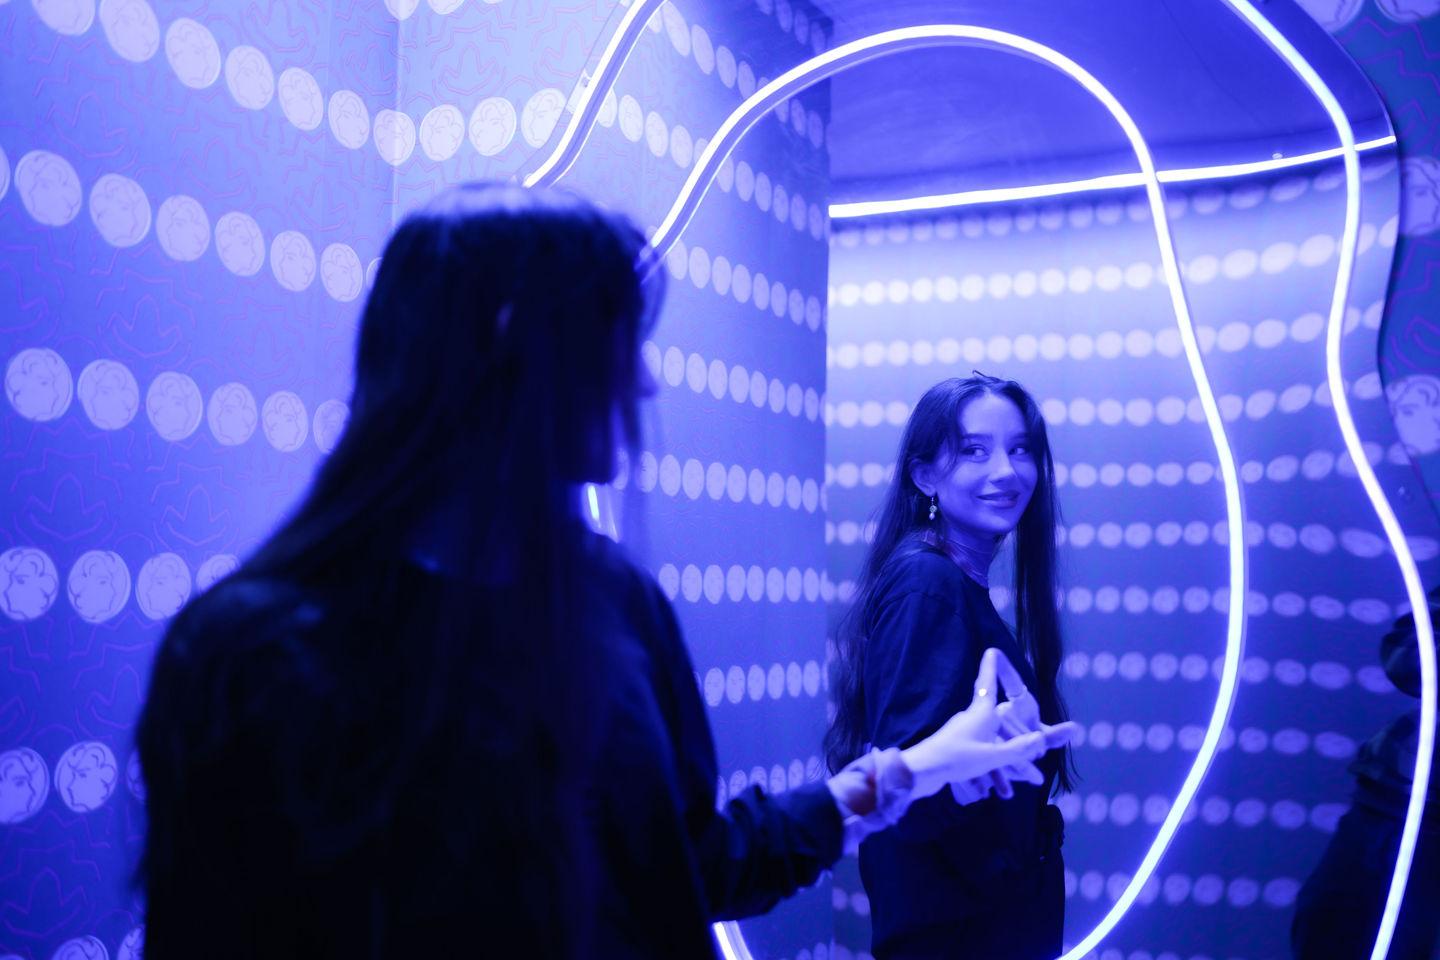 Bildet viser en kvinne foran et speil i et rom med blått lys. Speilbildet hennes er uskarpt i forgrunnen, mens hennes klare refleksjon smiler og poserer med hendene i speilet, som har en lysende neonring rundt seg. Bakgrunnen er dekorert med lyserende prikker, noe som bidrar til en livlig og moderne stemning.